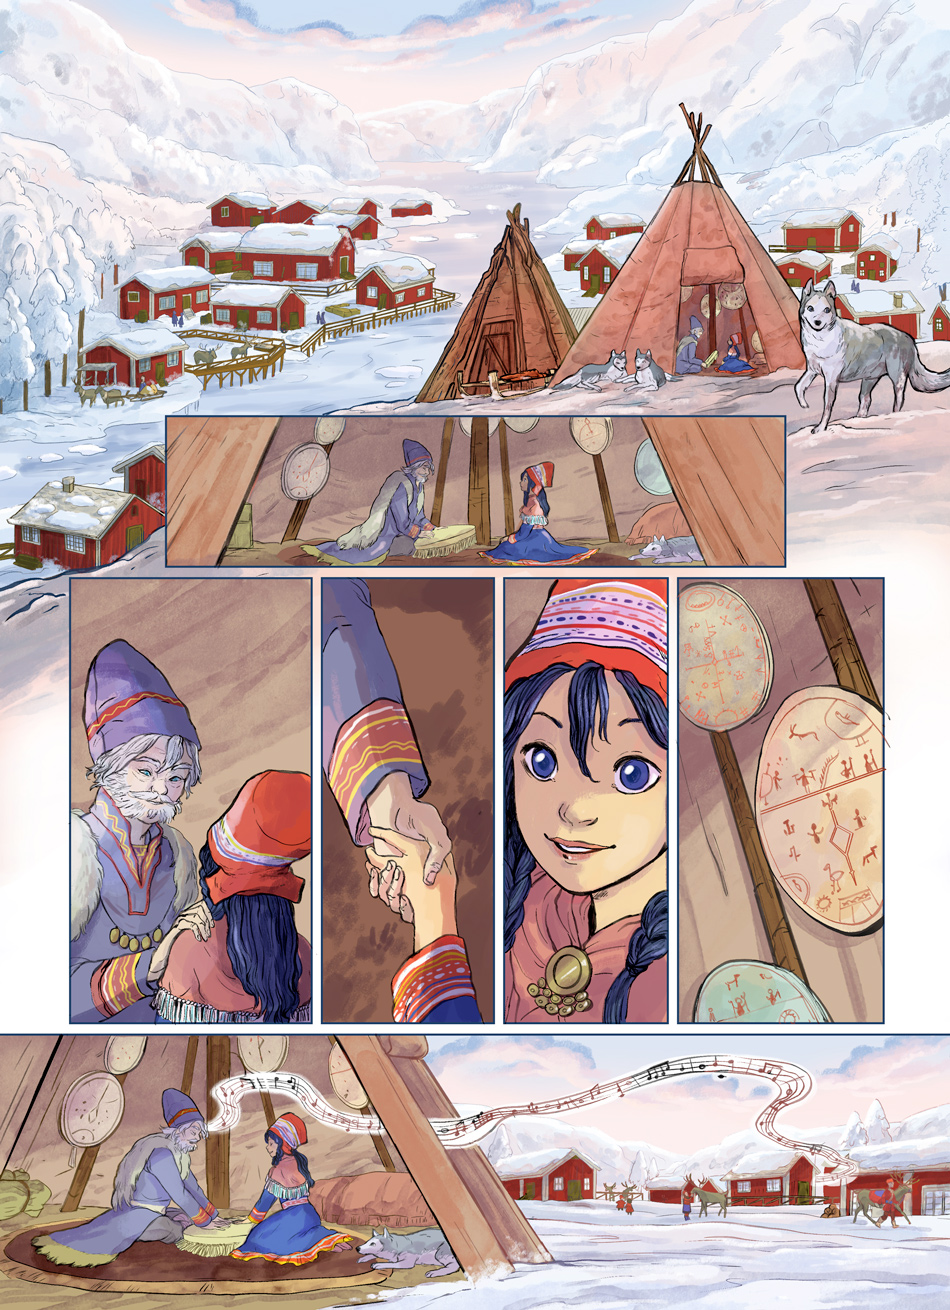 Les voyages de lotta-page 02-comic-Jungle Edition - kota sami people